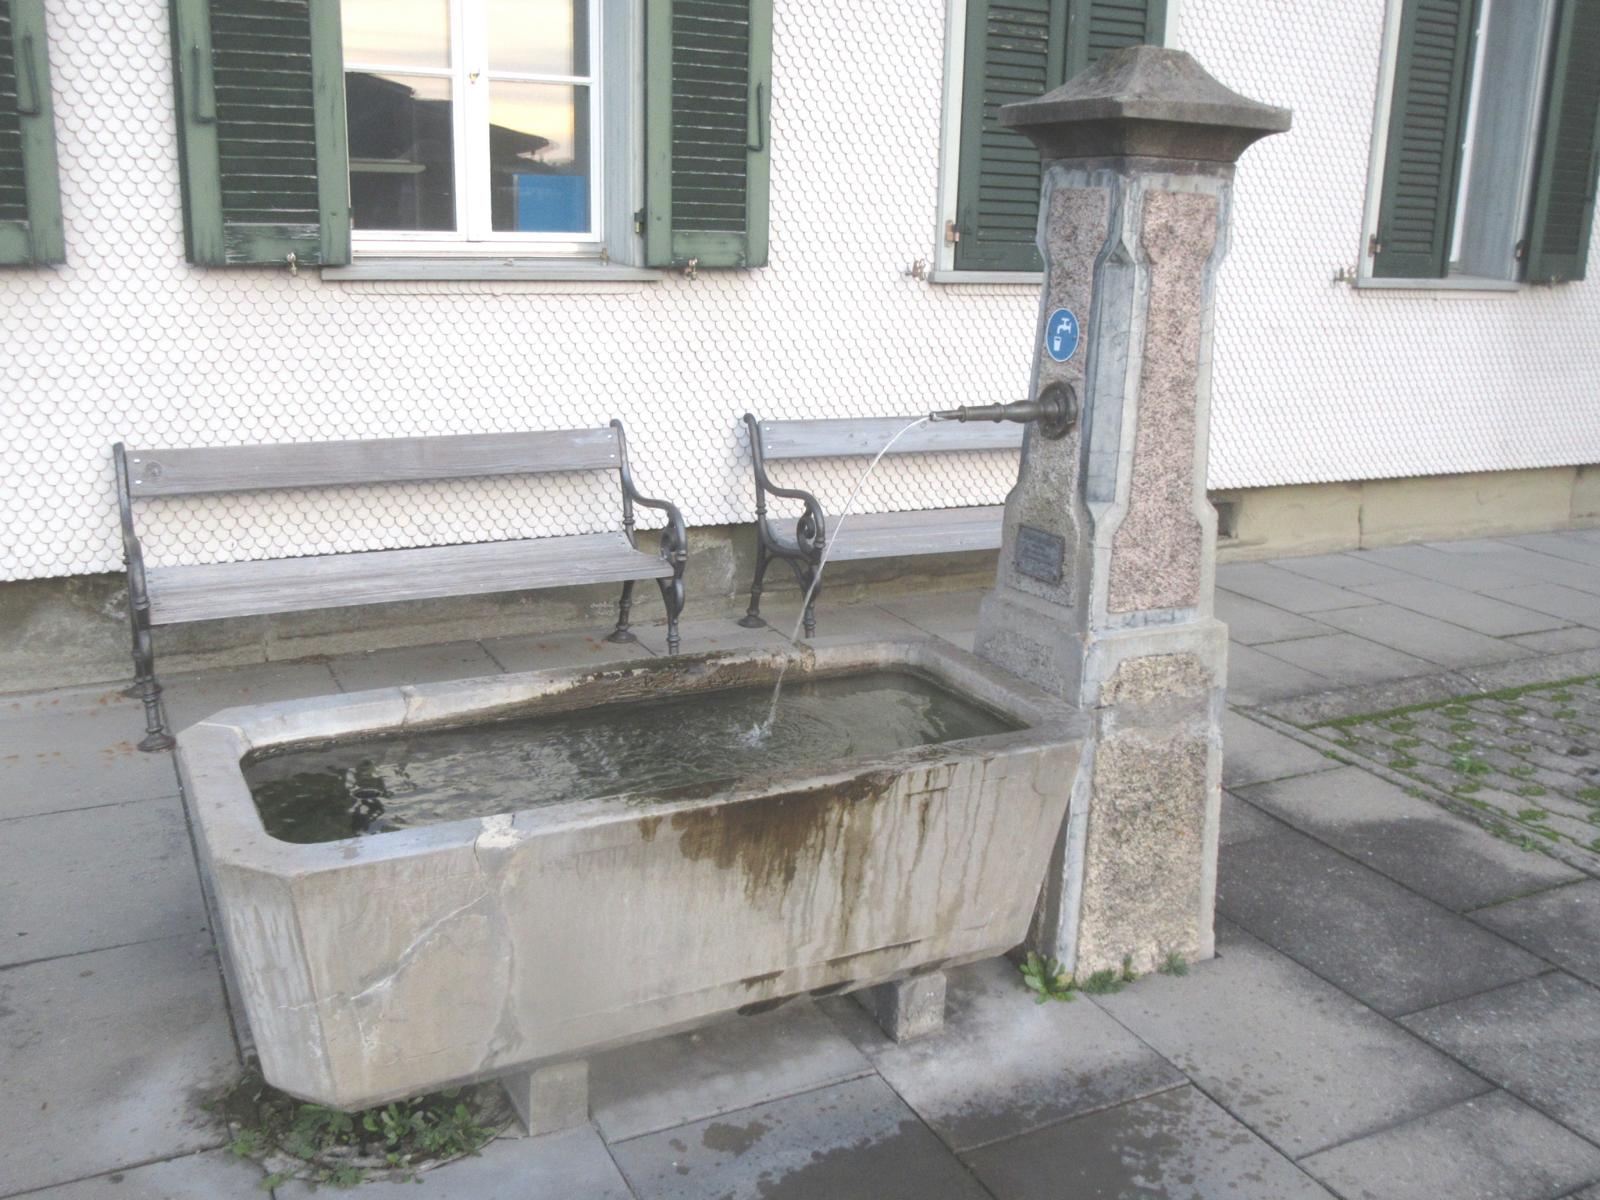 Gemeindehaus *** o.J. (20. Jh.) *** Beton; schmuckloser Trog *** Beton; Messingrohr; Stock mit Schmuckfeldern, Aufsatz: Pyramidenstumpf *** Tafel: "Trinkwasser von der Vennersmühle Wasserversorgung" (heute: Emmental Trinkwasser) , <a href="./files/wasseranalyse_be_-_aefligen.pdf" target="_self">Wasseranalyse</a>